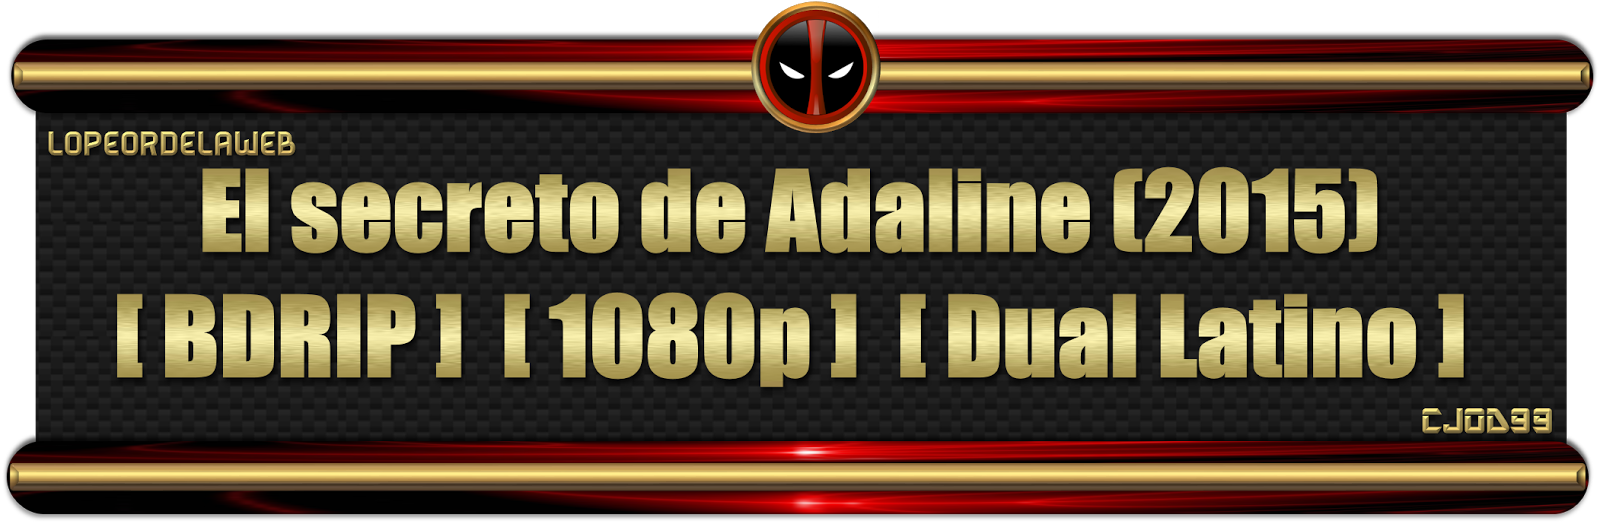 El Secreto de Adaline (2015)BDRip 1080p Dual 